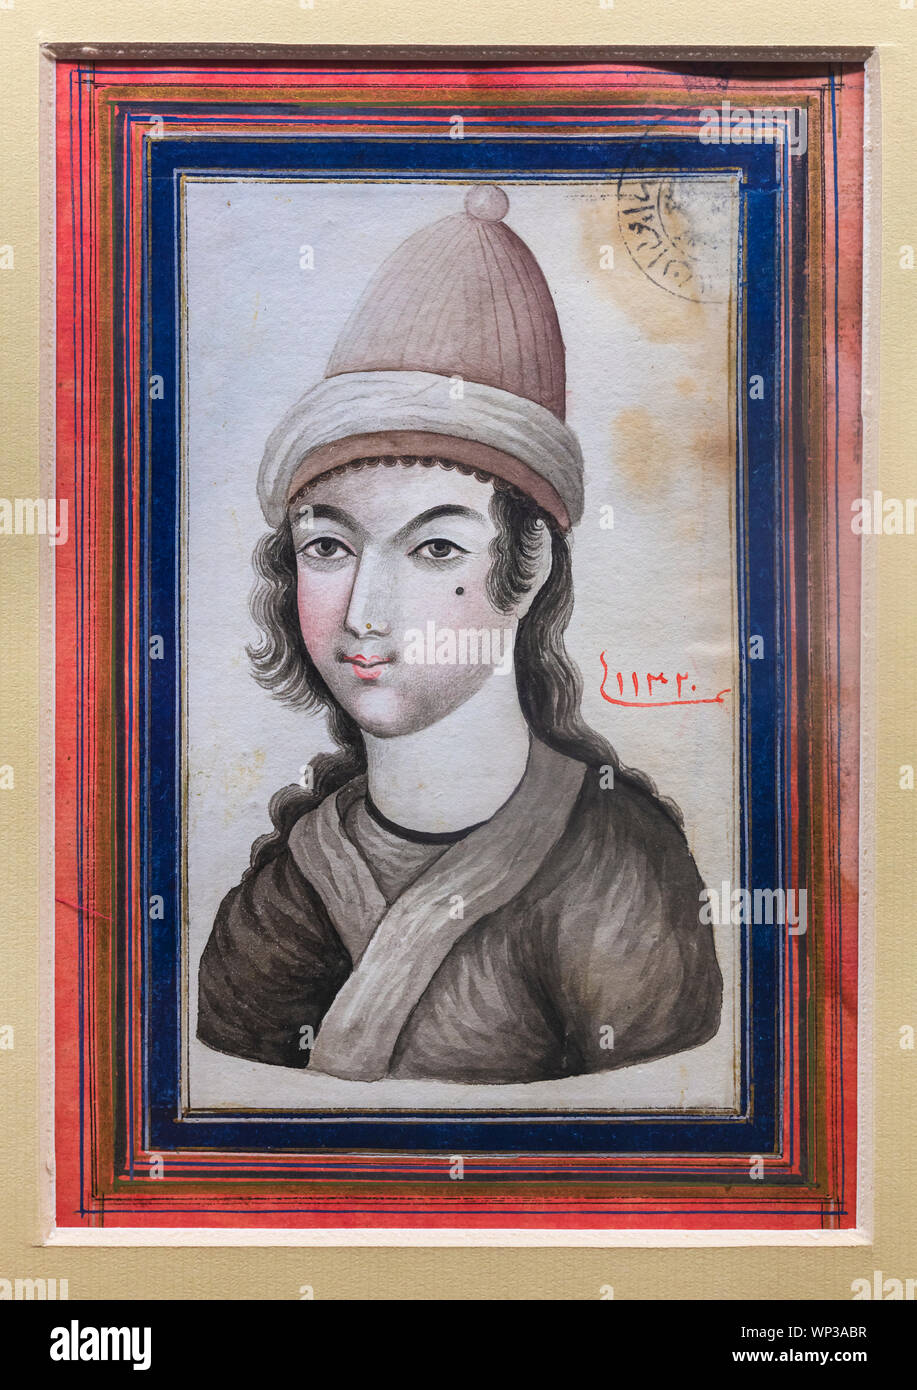 Portrait de jeune homme, encre noire peinture, 18ème siècle, musée de l'ère islamique, Musée National d'Iran, Téhéran, Iran Banque D'Images